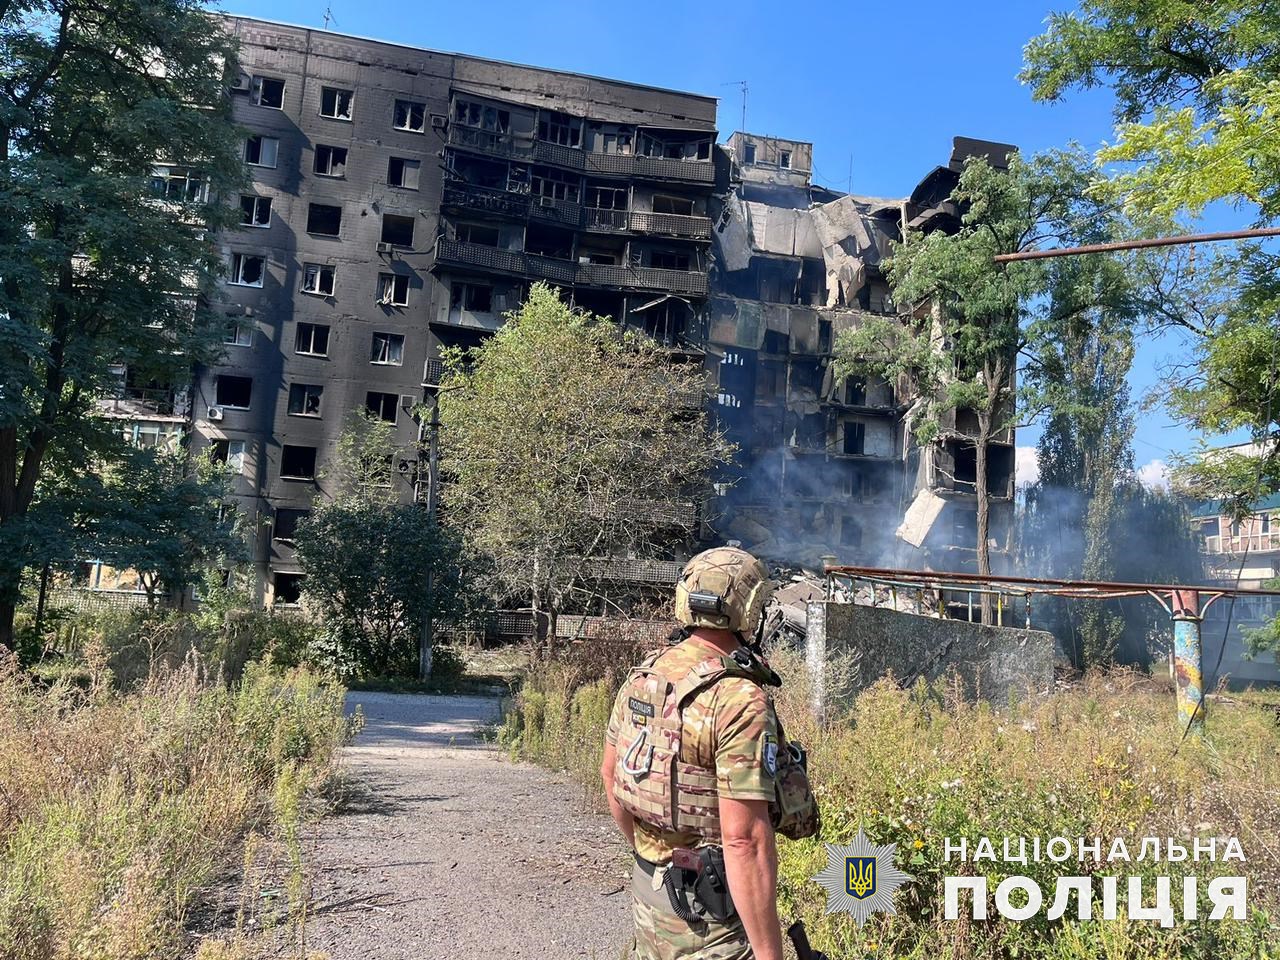 Дев’ятиповерховий будинок, який зруйнували росіяни 18 вересня.